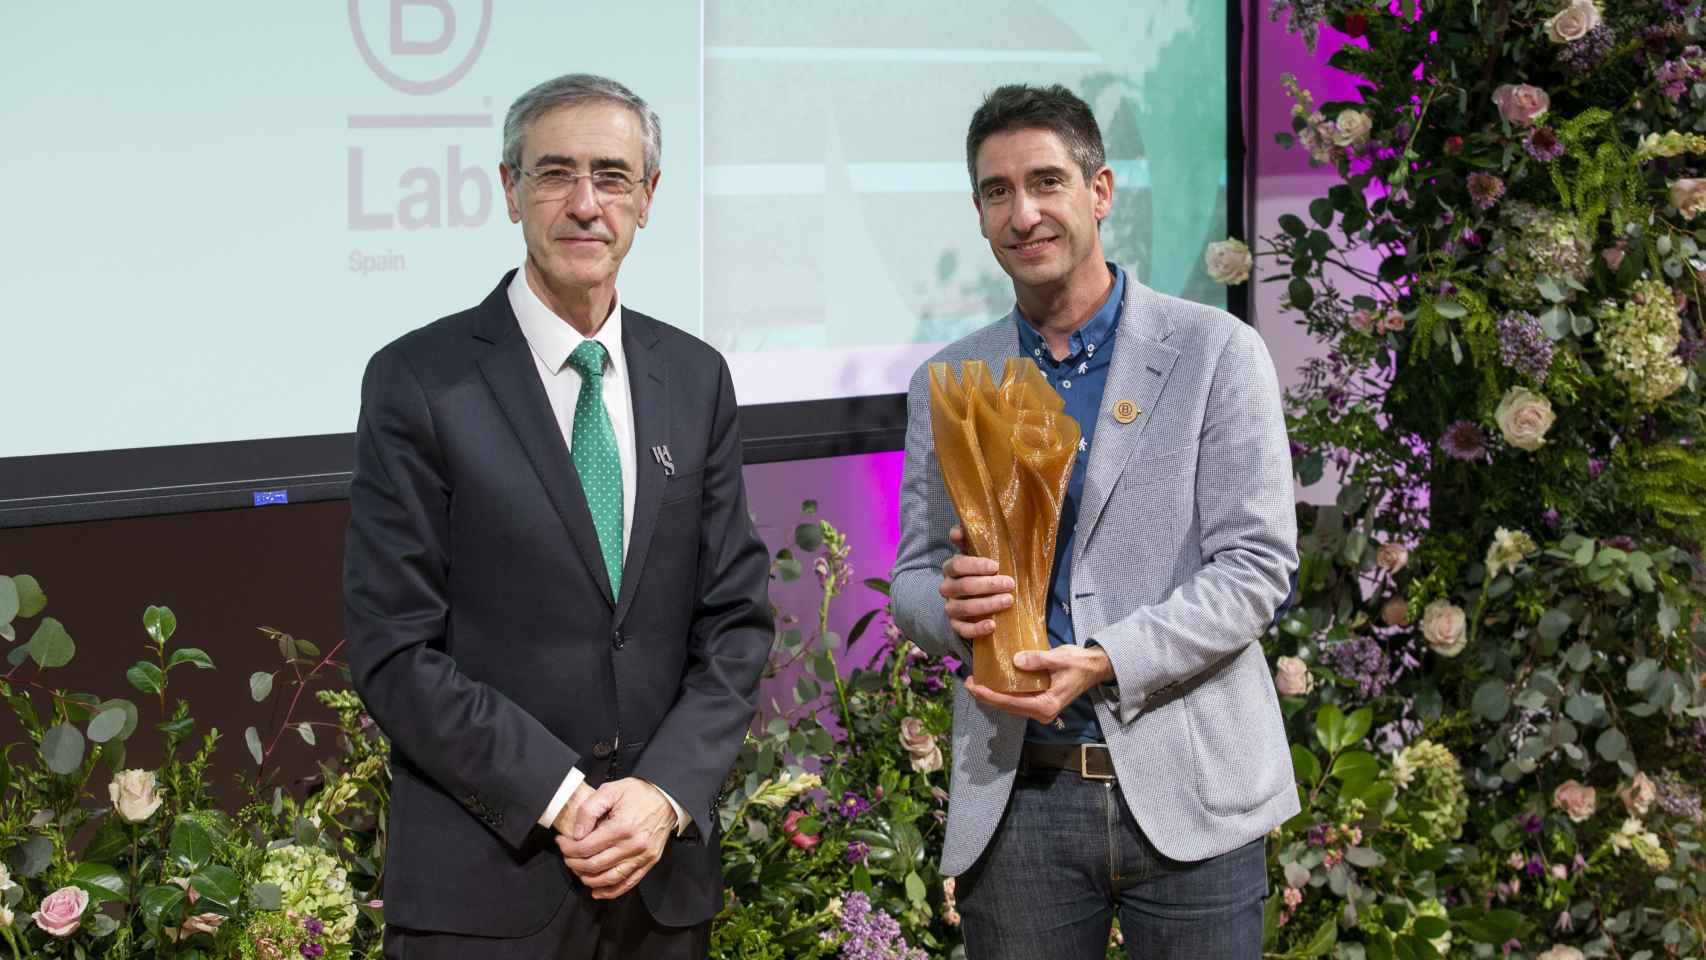 Entrega del premio InspirACCIÓN en la categoría de Empresa y Economía a B-Lab Spain